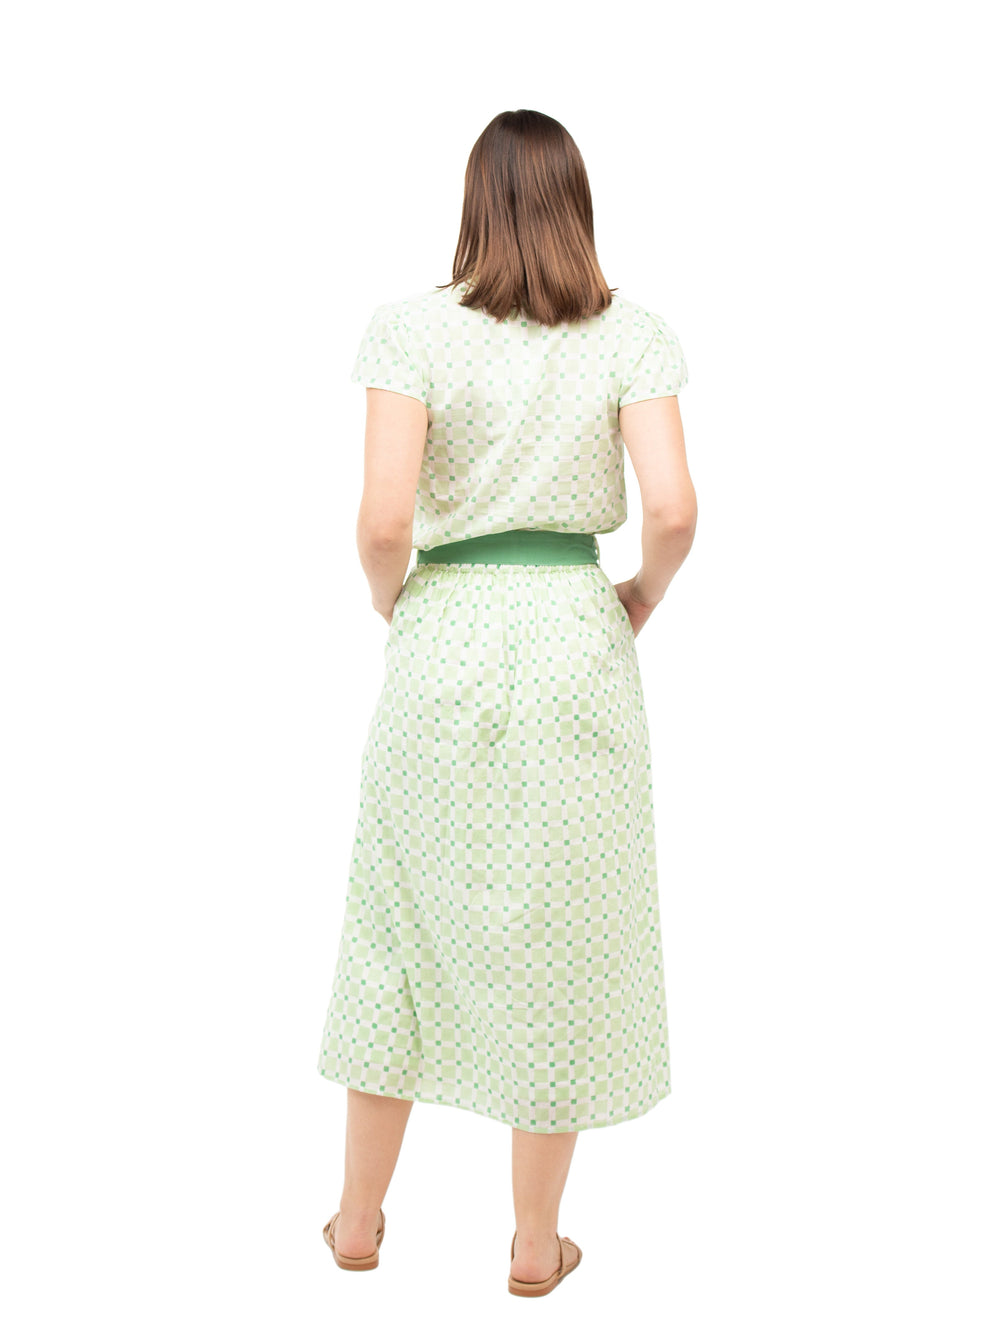 Beau & Ro Apparel The Prairie Skirt | Green Check